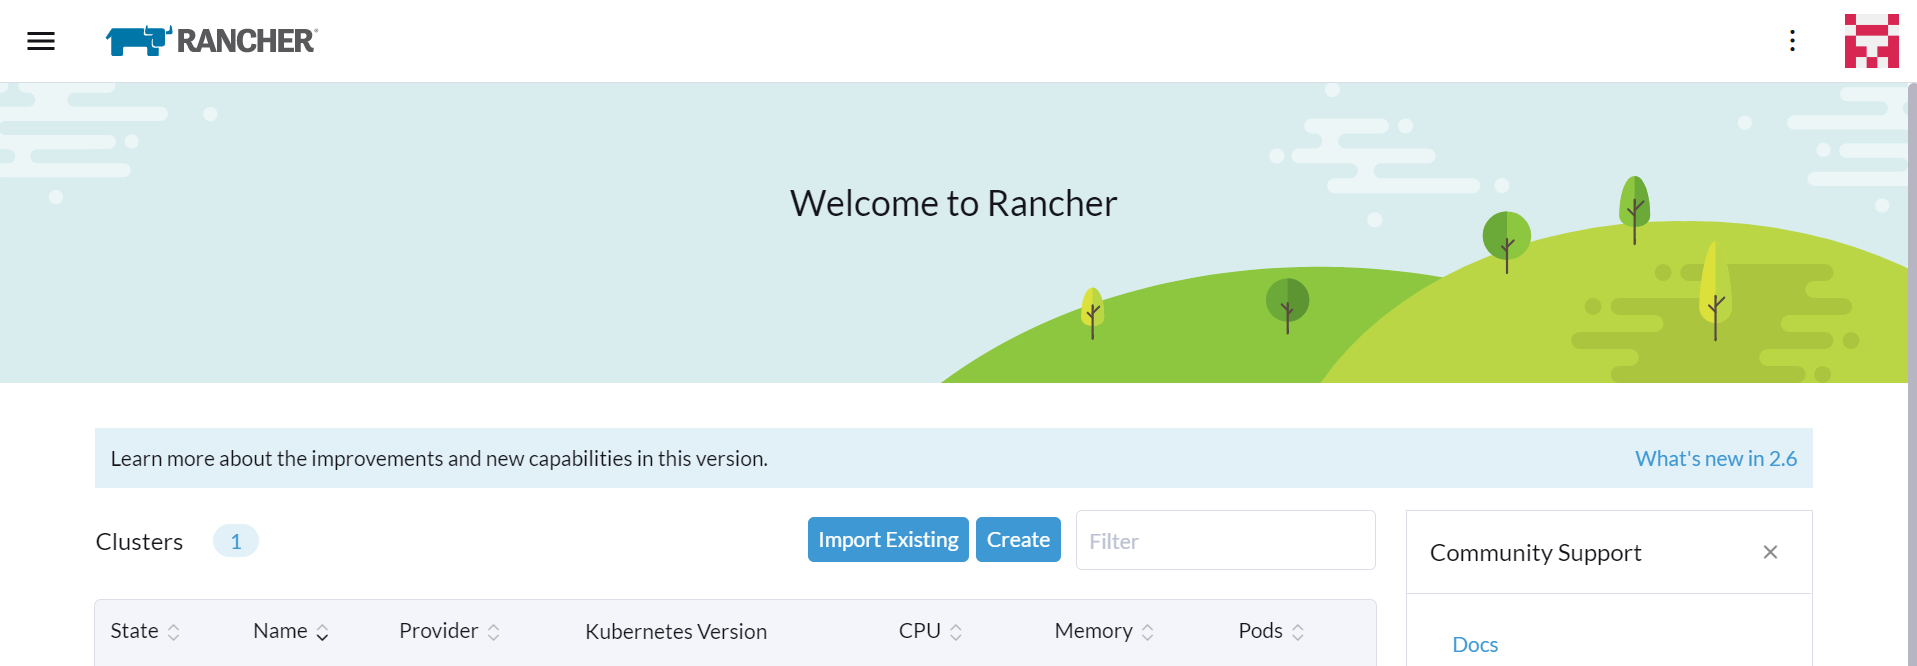 Rancher Portal